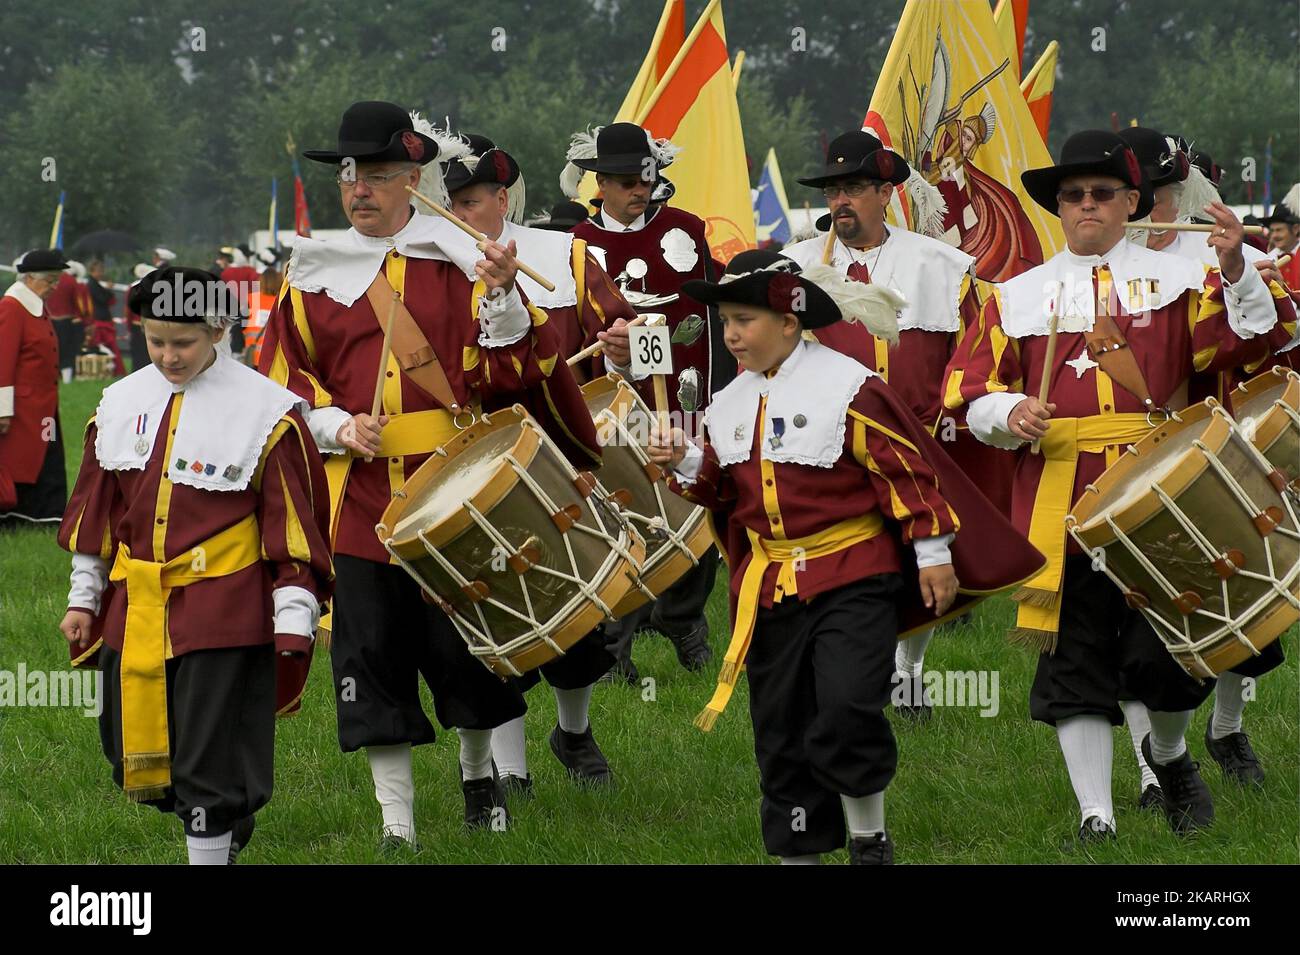 Heeswijk, Niederlande, Europäische Gemeinschaft Historischer Schützen; Marschprozession mit Trommeln und Bannern in historischen Kostümen Stockfoto